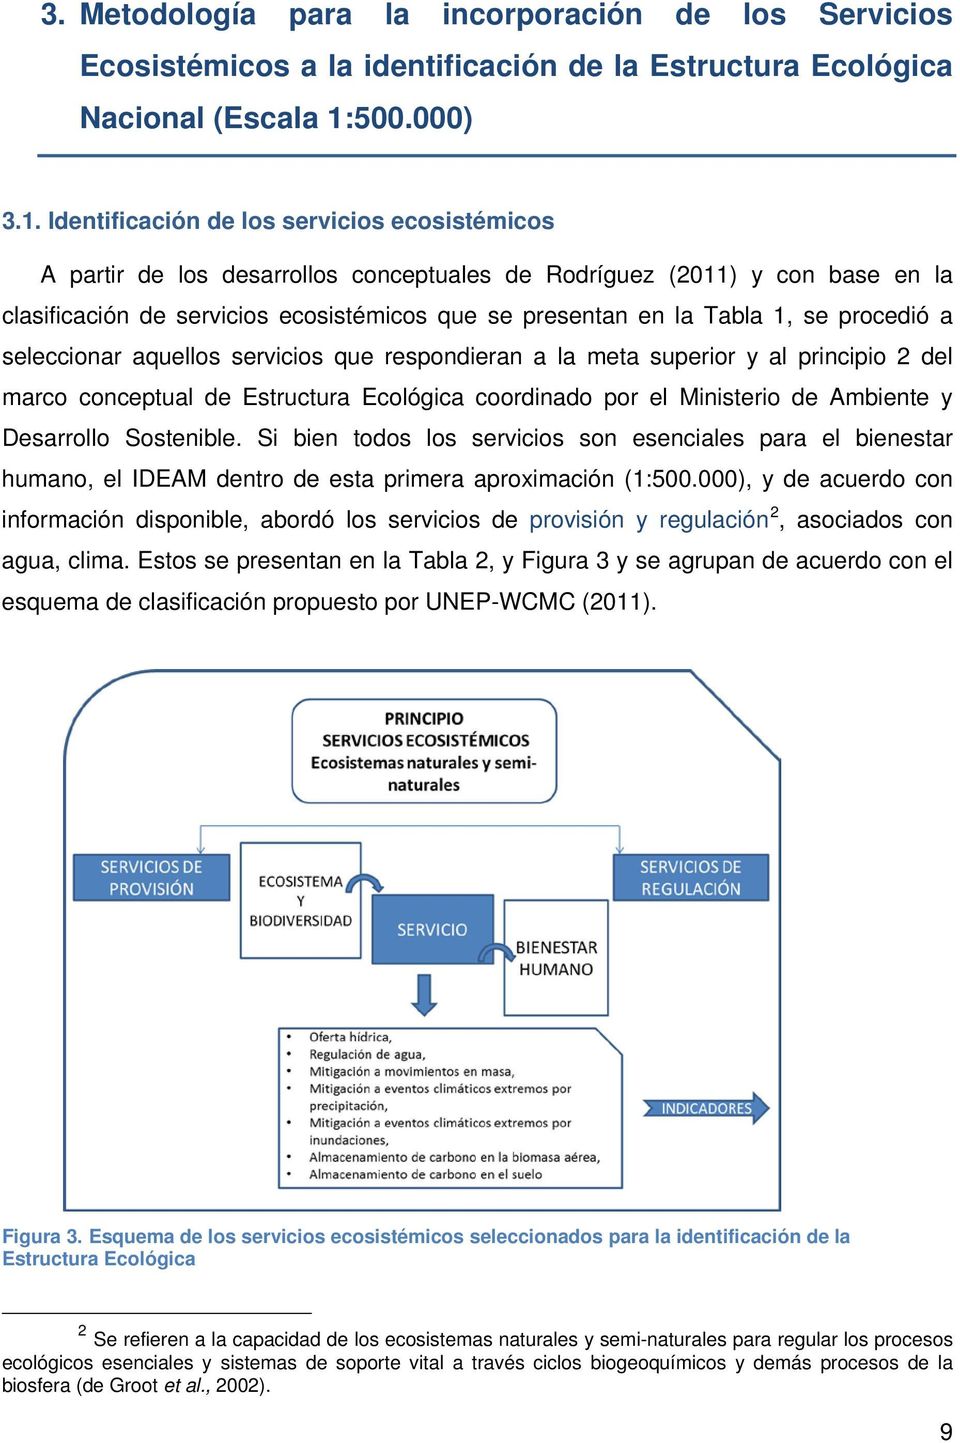 Identificación de los servicios ecosistémicos A partir de los desarrollos conceptuales de Rodríguez (2011) y con base en la clasificación de servicios ecosistémicos que se presentan en la Tabla 1, se